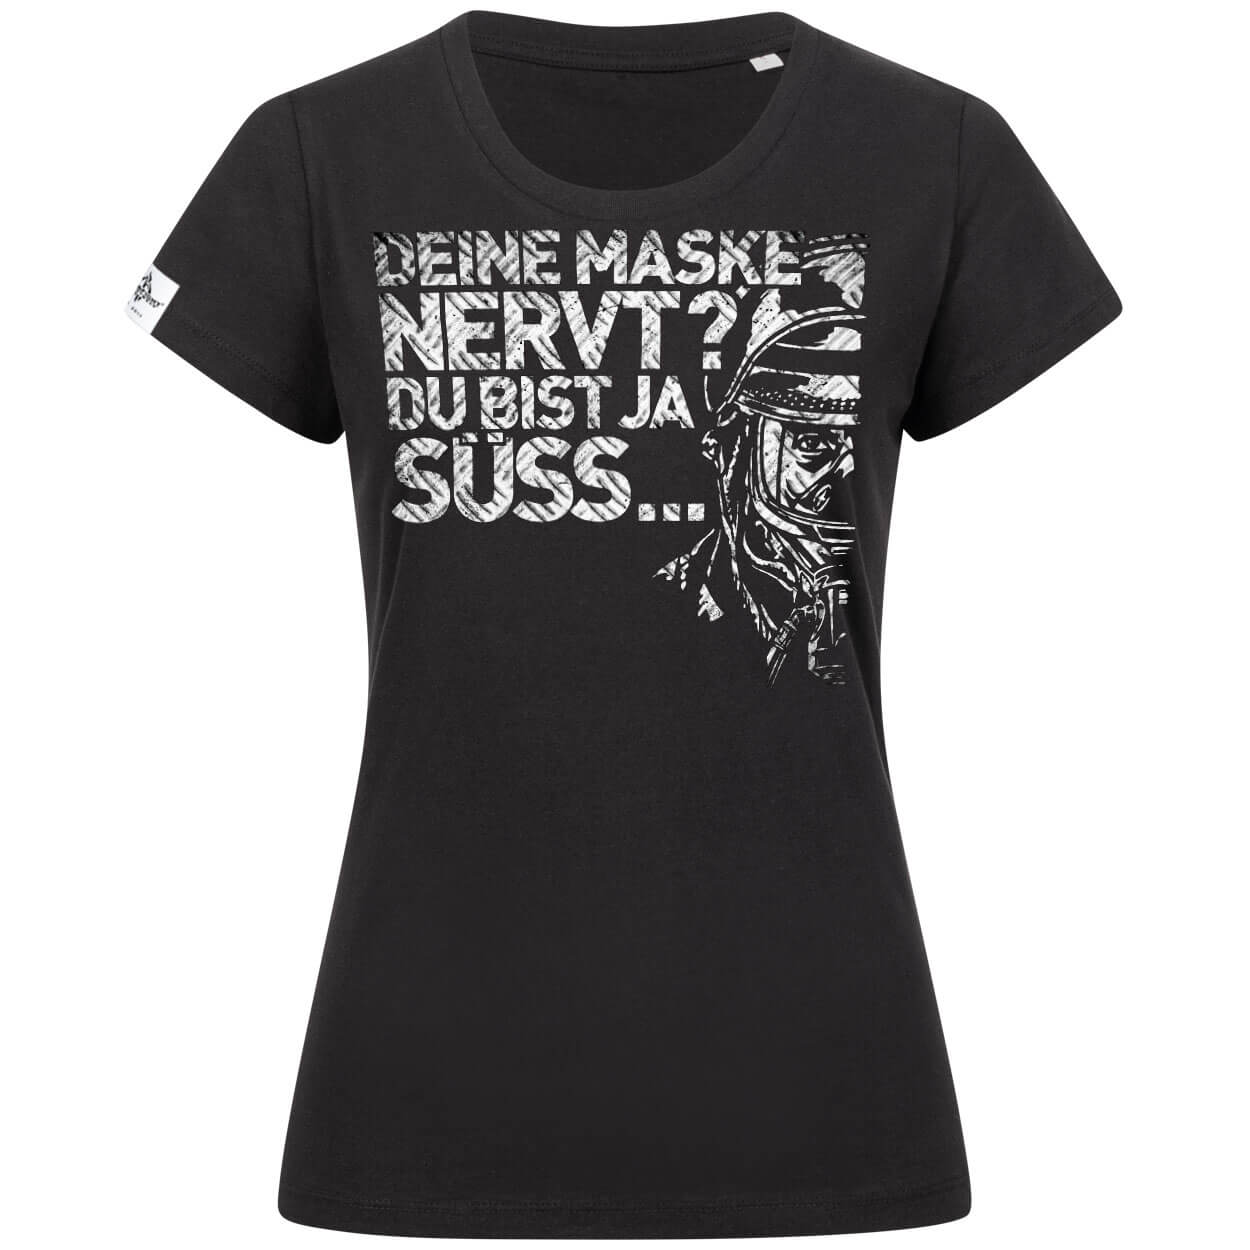 Maske nervt? Feuerwehrfrau T-Shirt